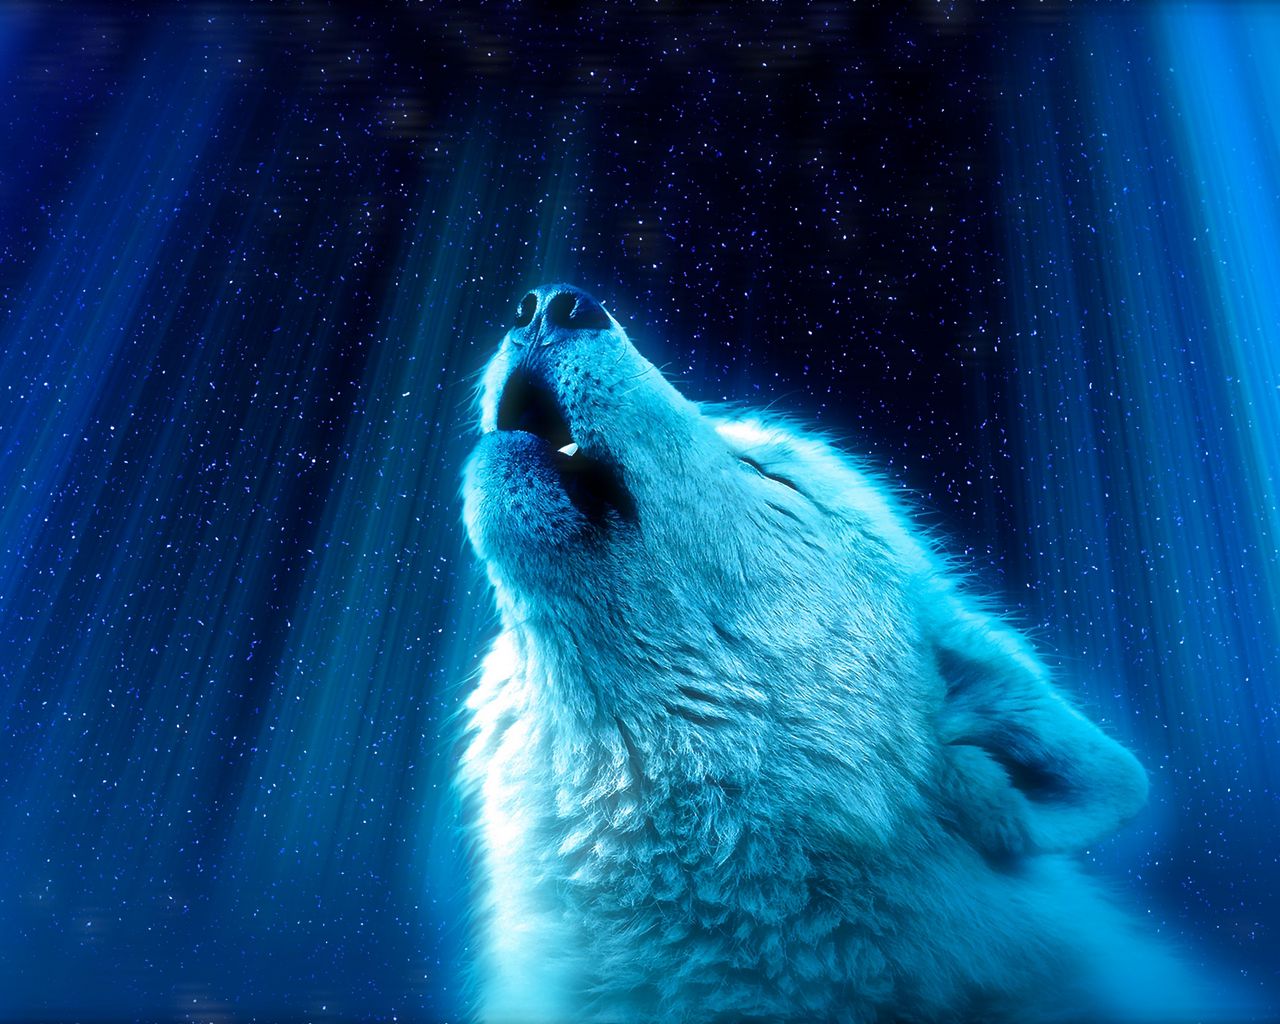 Hãy đến với hình ảnh liên quan đến chú sói để khám phá kho tàng sự khôn ngoan và sức mạnh dũng cảm của loài thú đầy bí ẩn này.